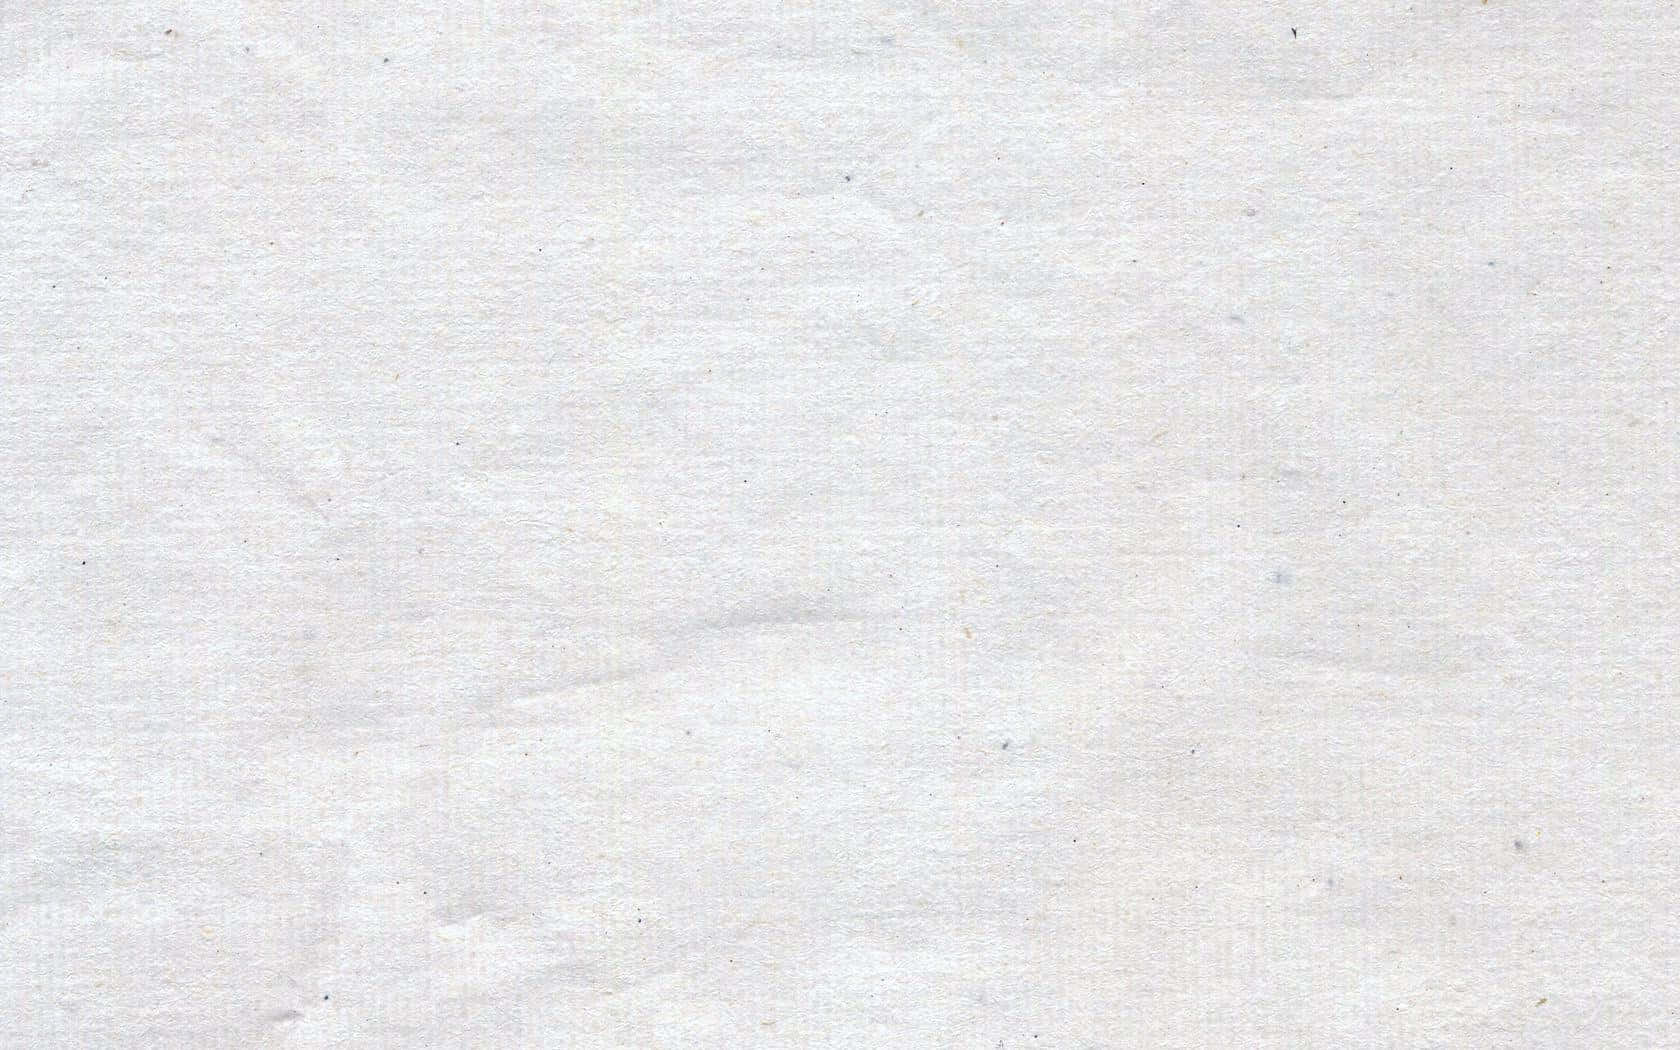 Hvide tekstur papirbilleder